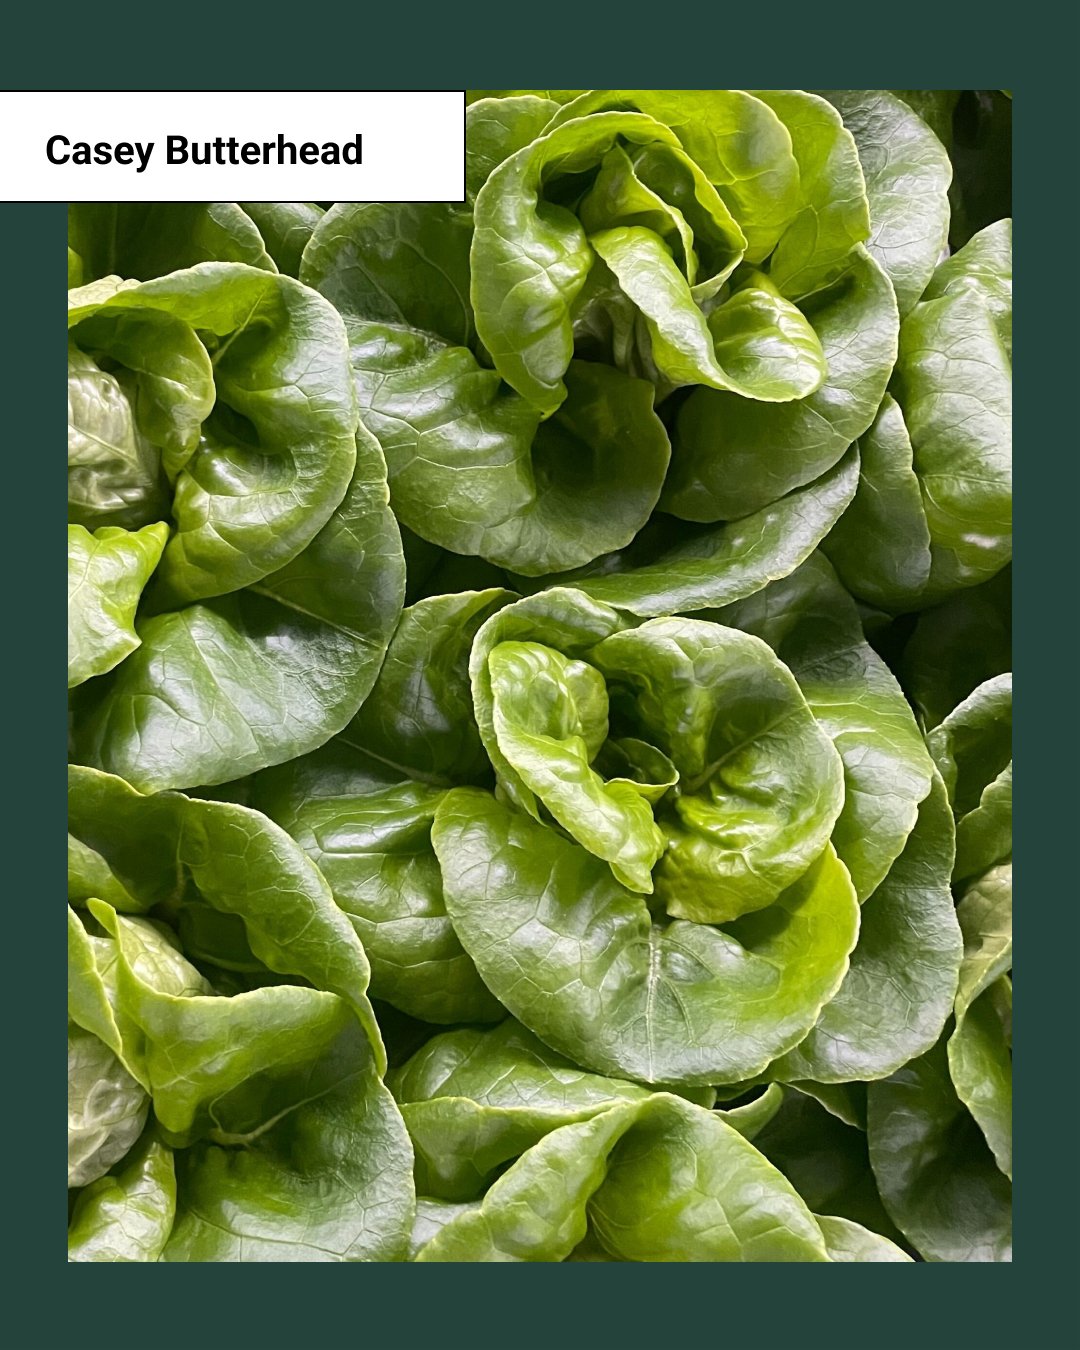 Casey Butterhead Lettuce